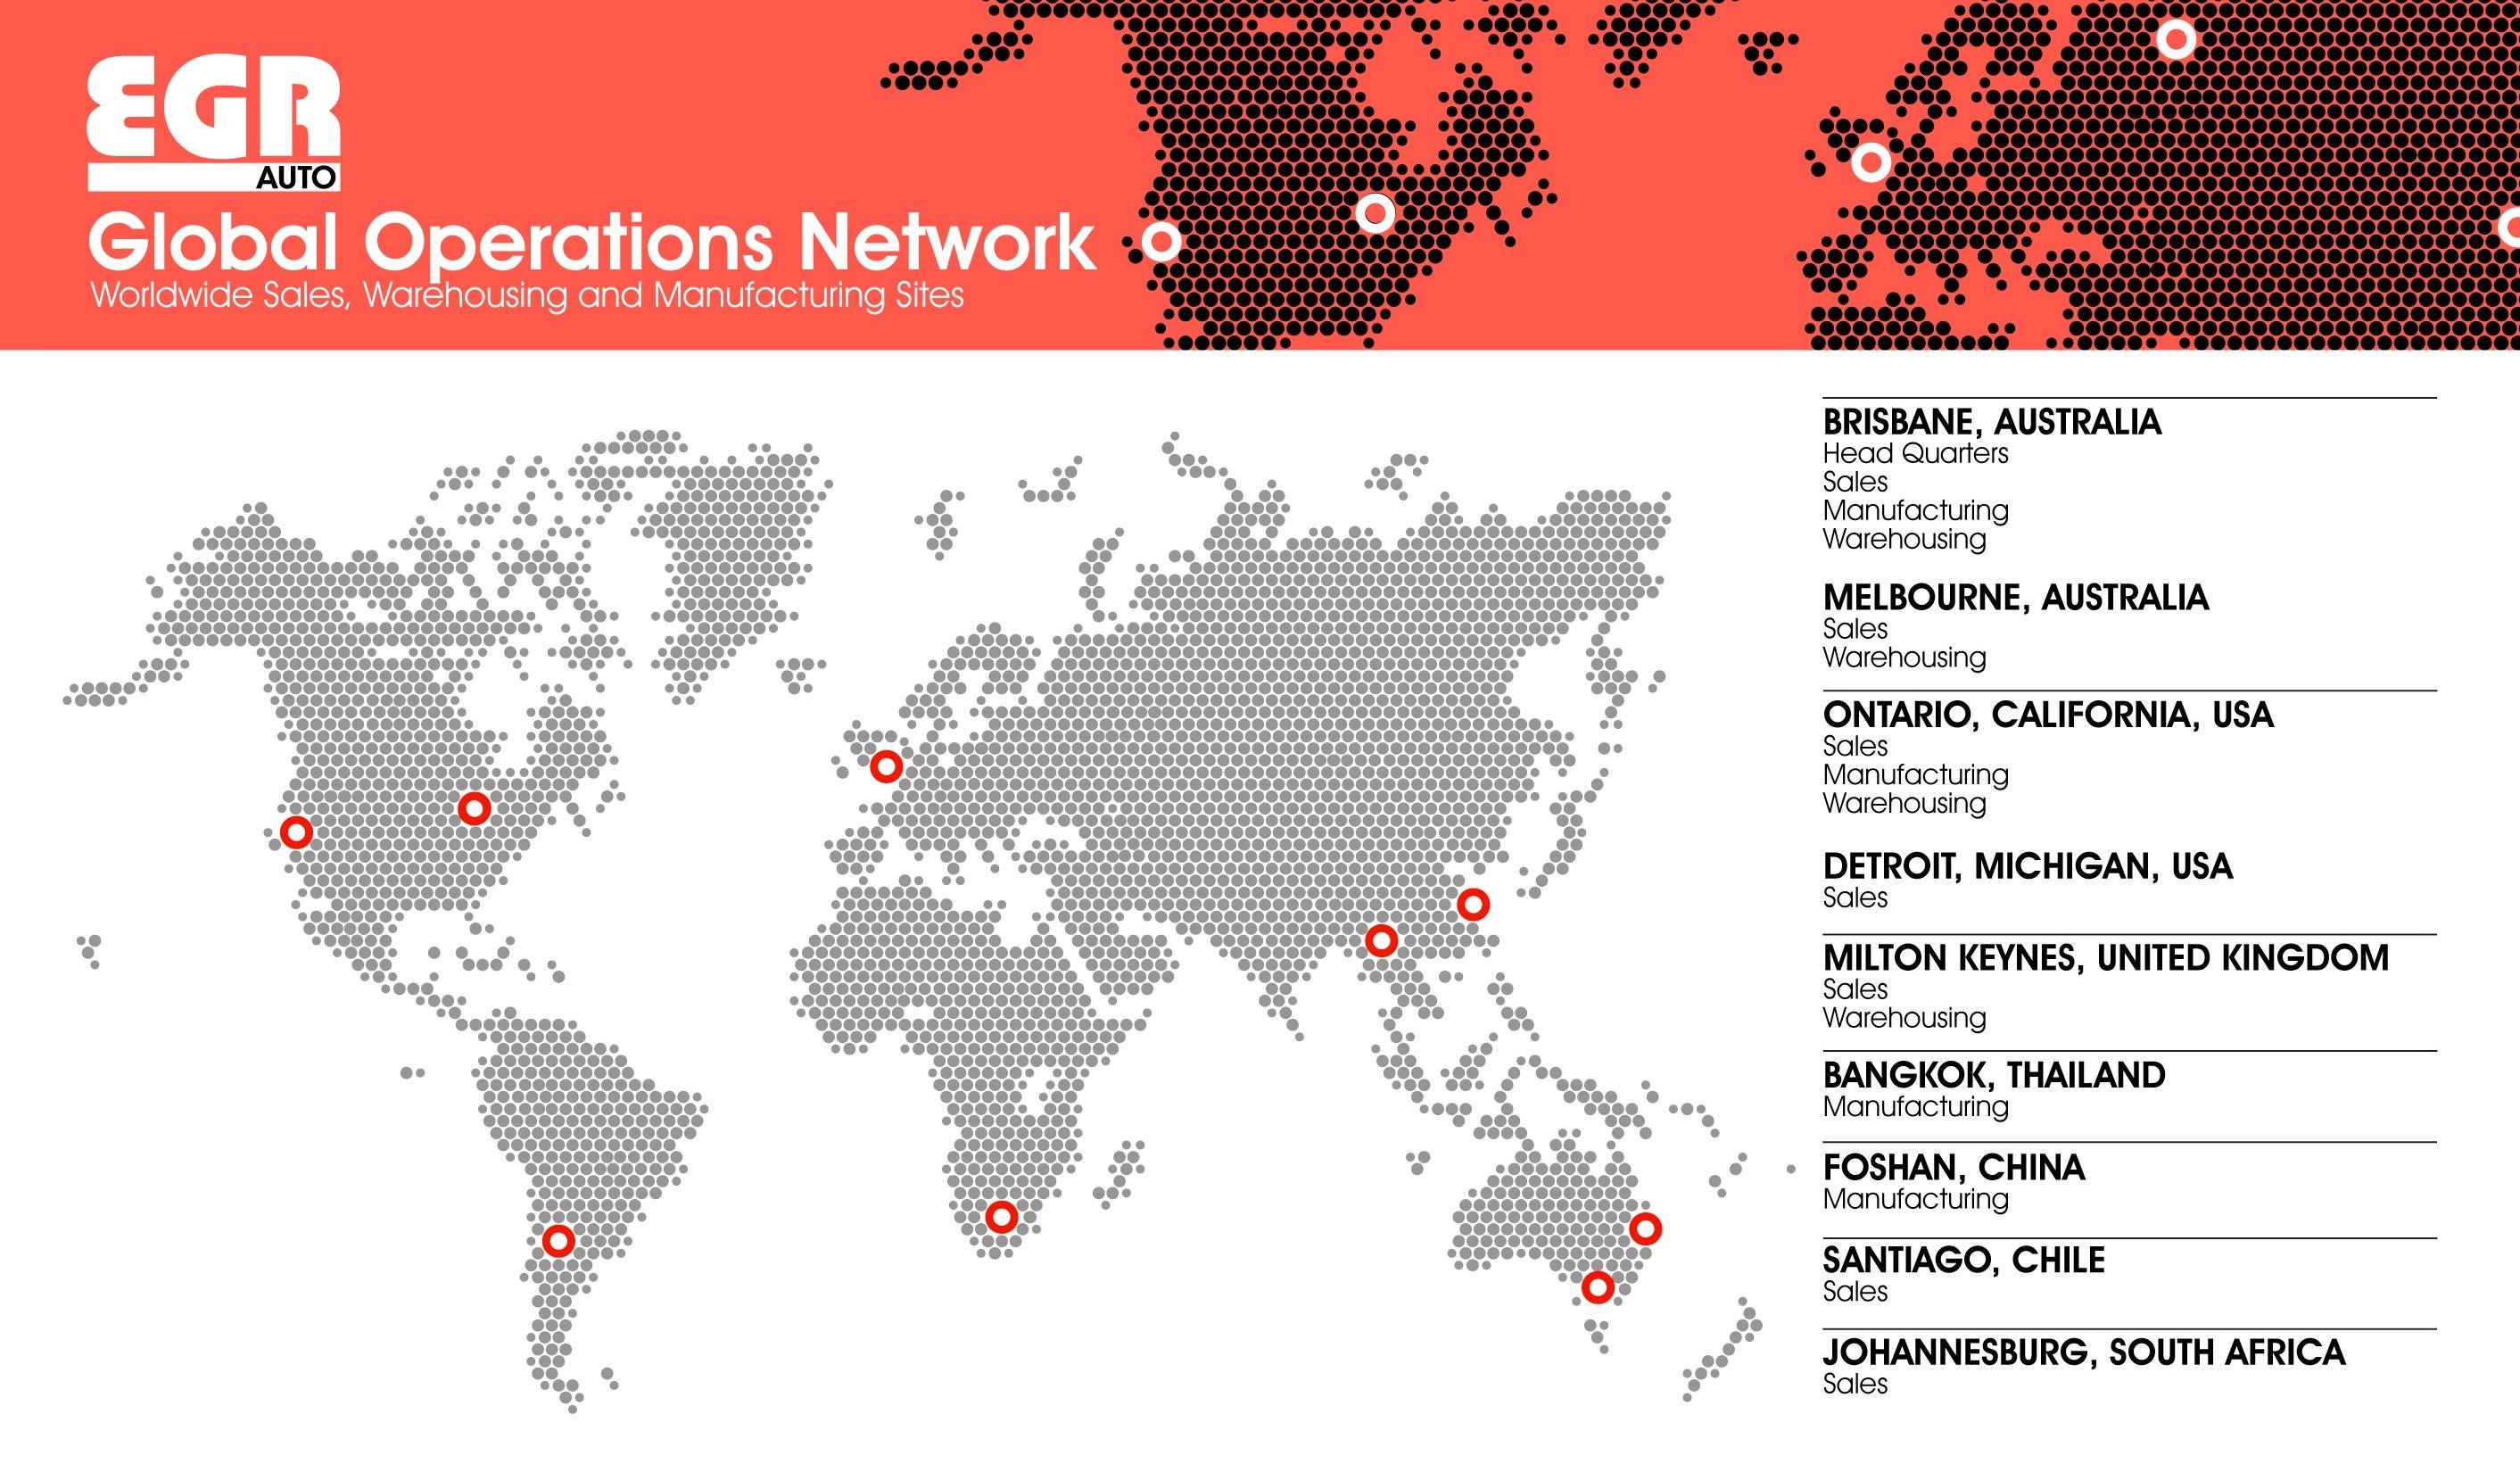 EGR Global Operations Map